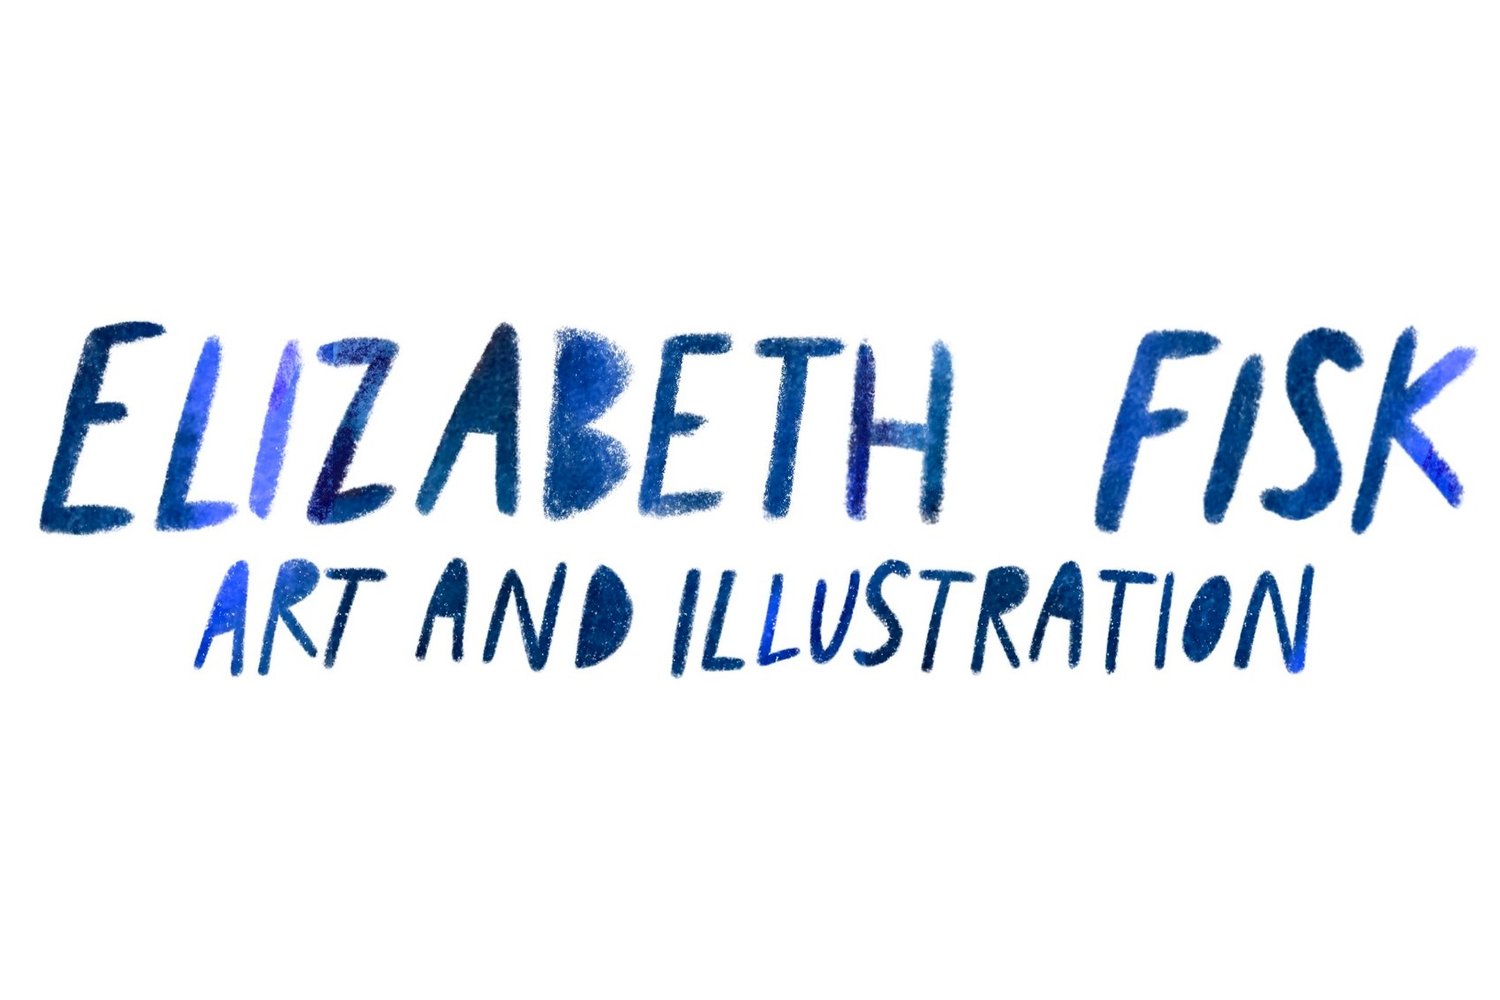 ELIZABETH FISK ART AND ILLUSTRATION